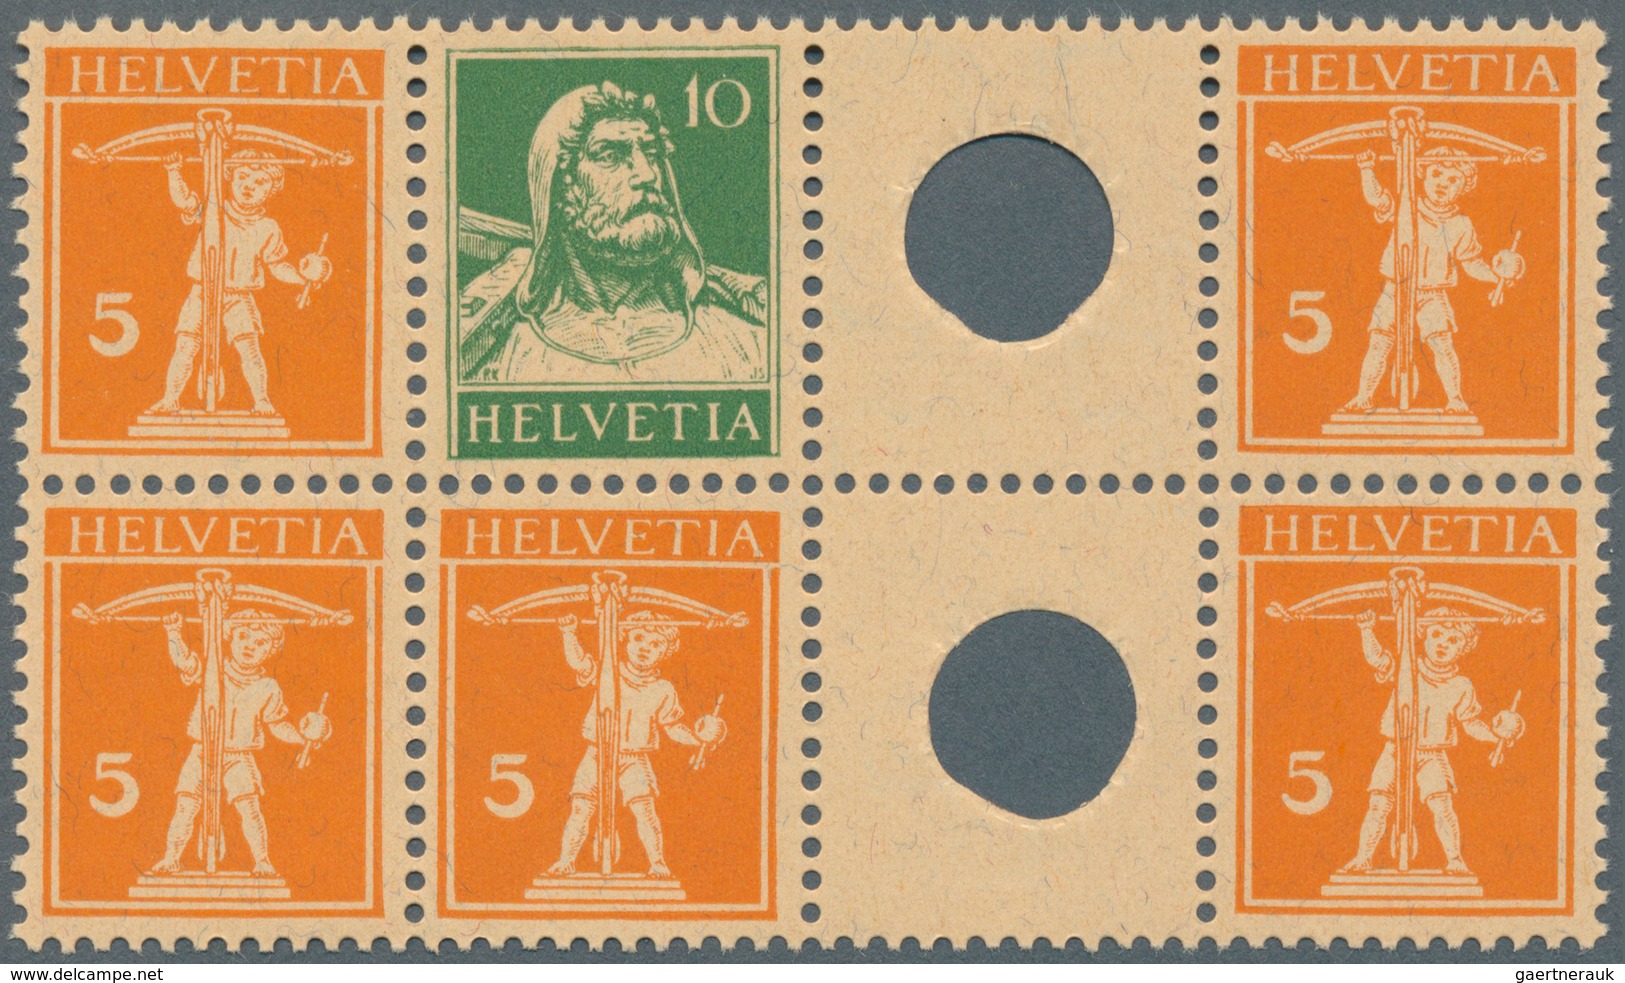 Schweiz: 1908-1930, ZUSAMMENDRUCKE UND BOGEN: Umfangreiche Kollektion von 41 kompletten Bogen (9 Zus